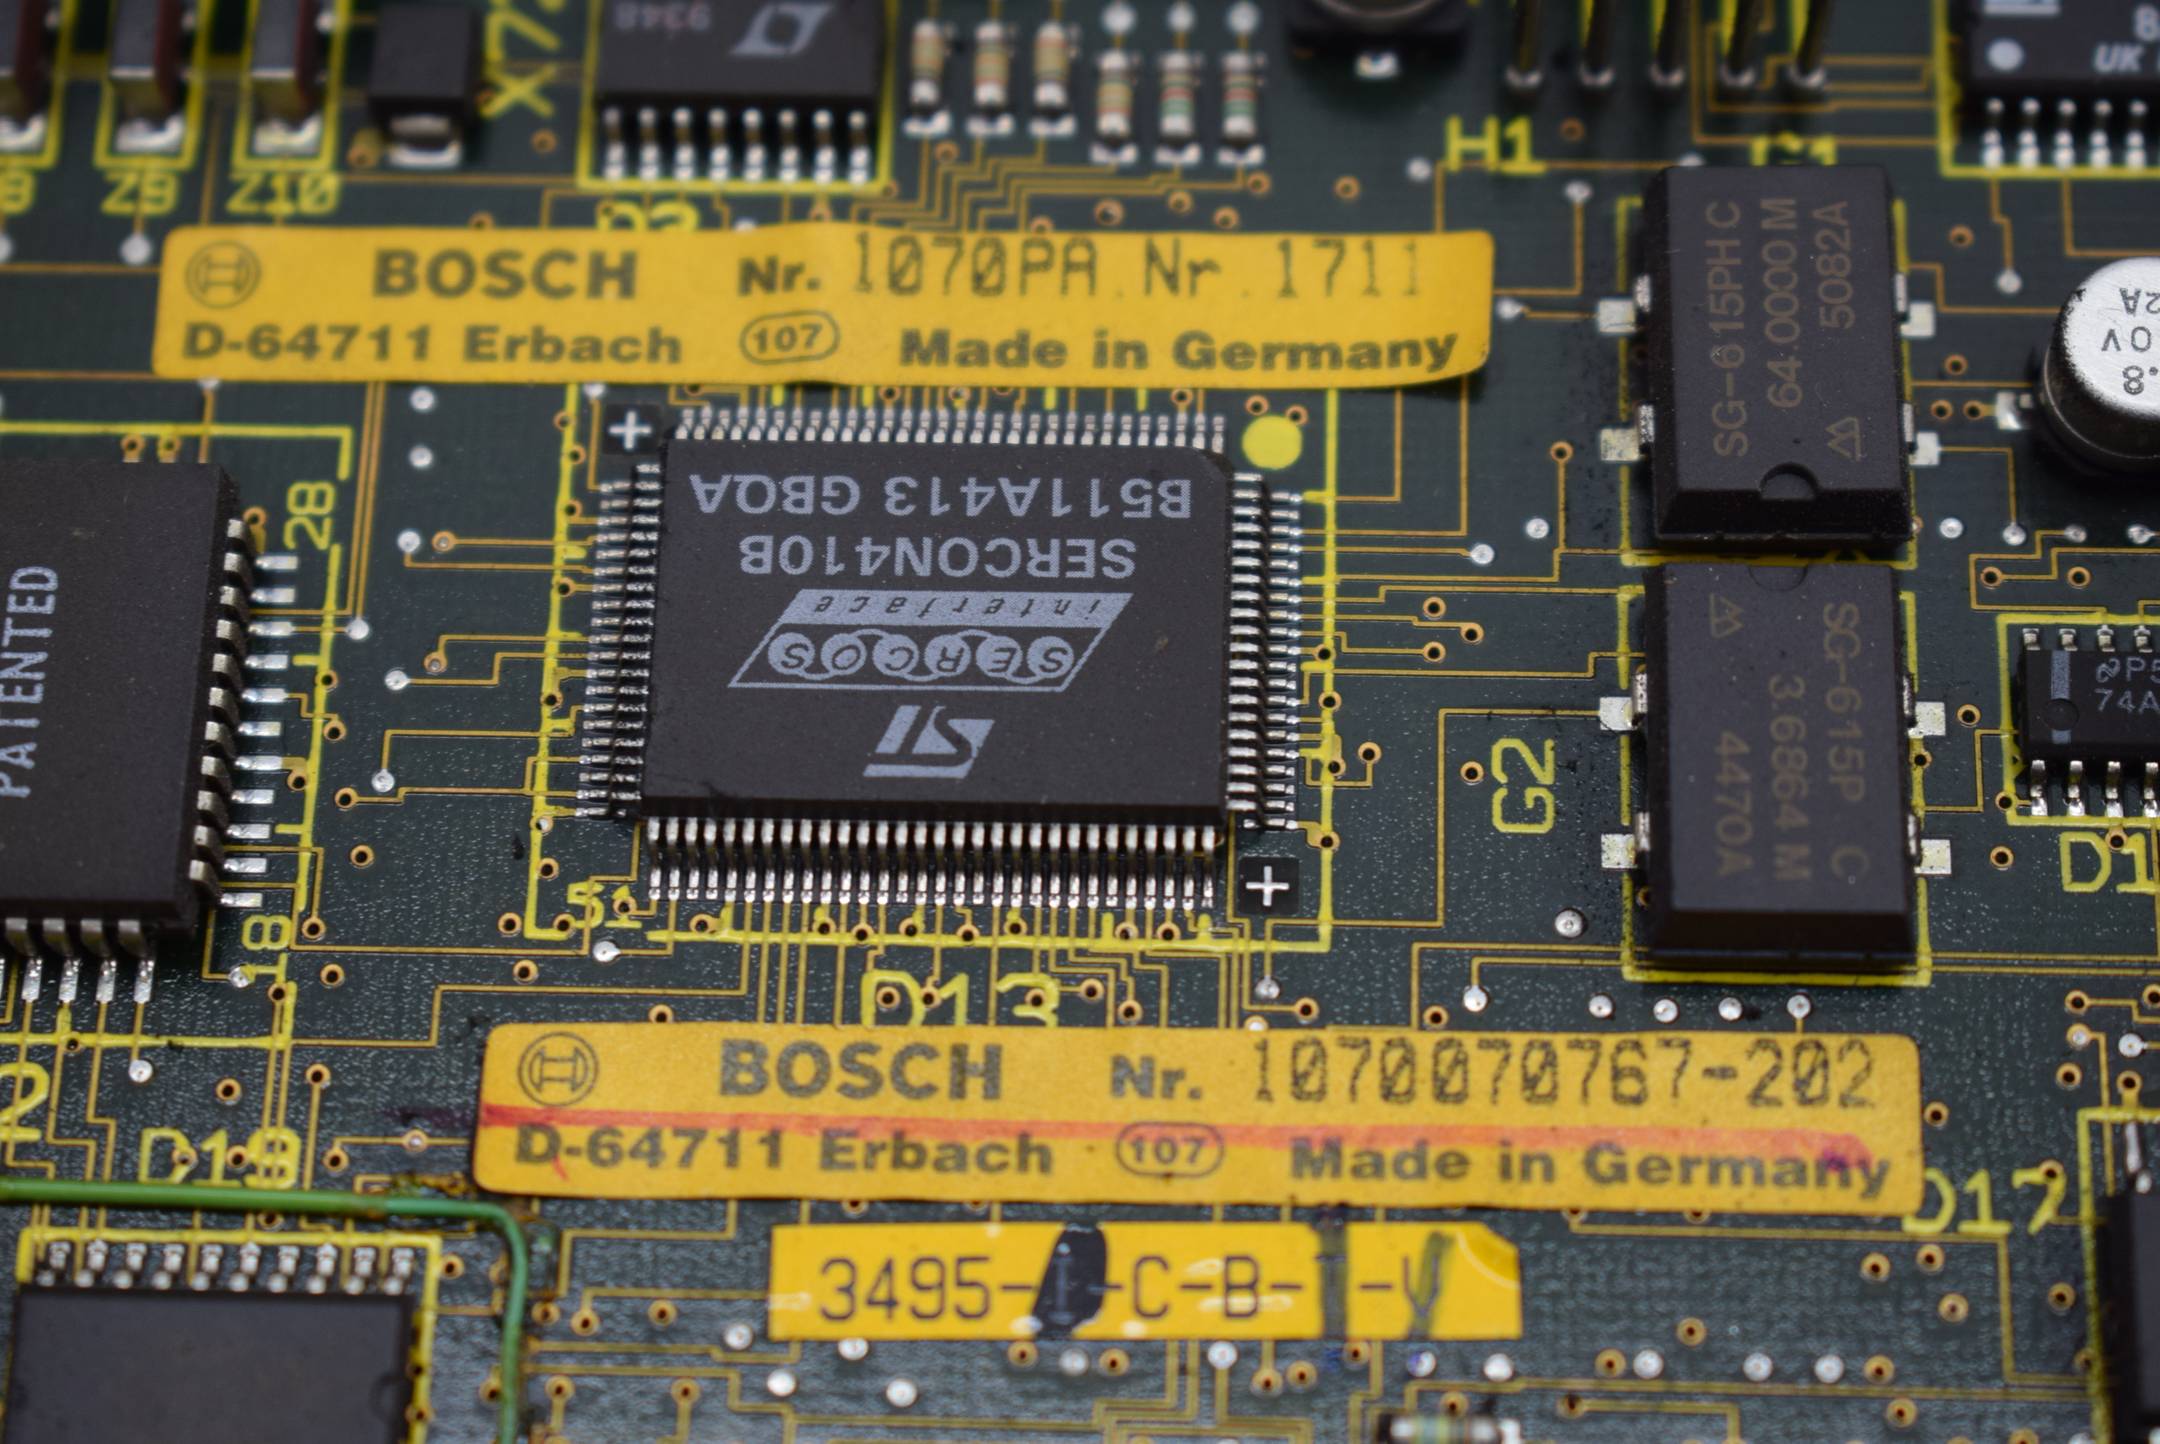 Bosch 1070070767-202 inkl. 23000195 SC512KB Memory Card Sram